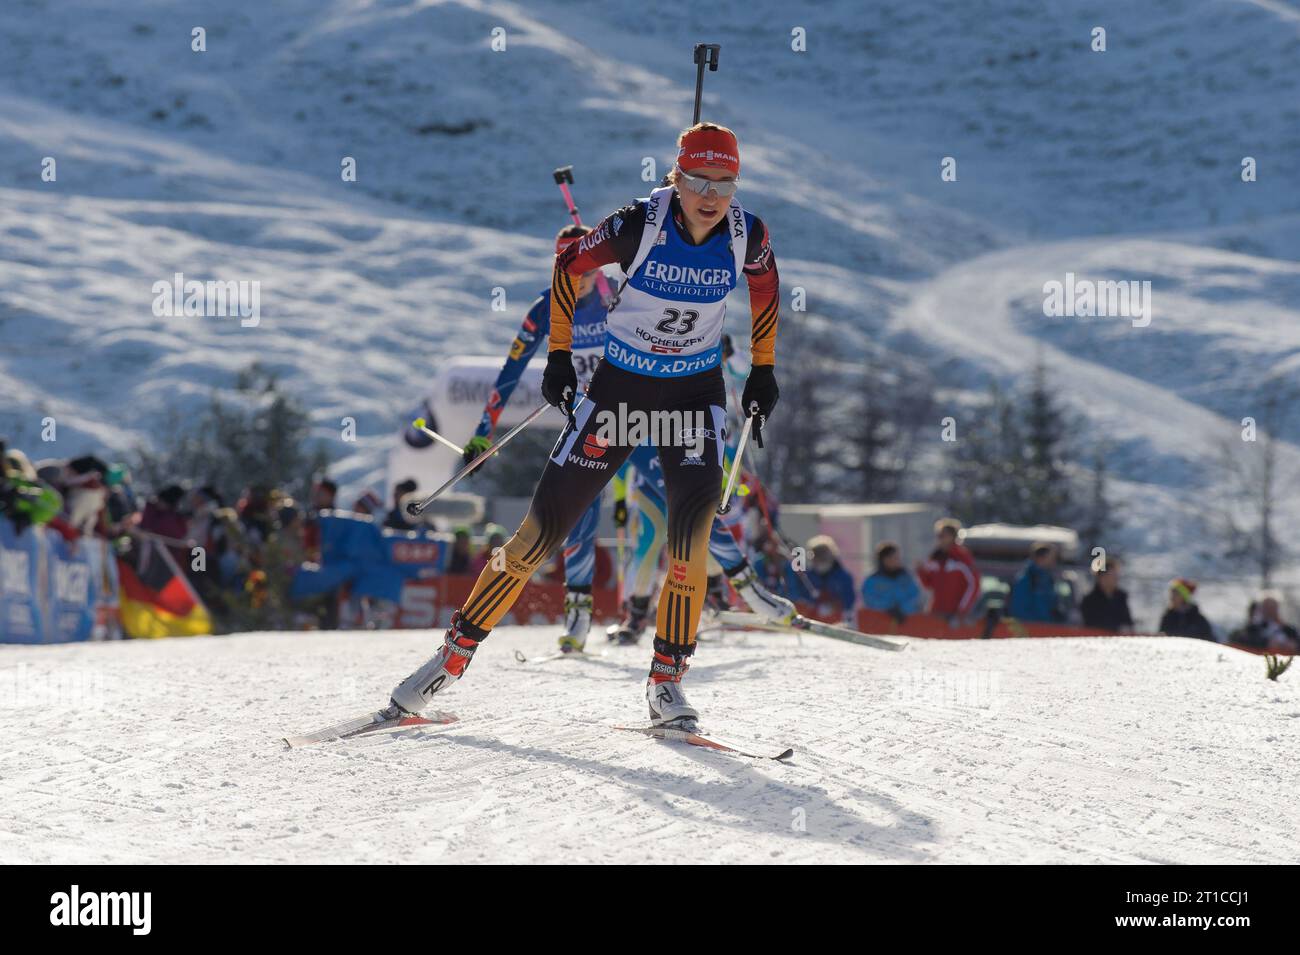 Luise Kummer Aktion Biathlon Welt Cup 10 KM Verfolgung der Frauen in Hochfilzen, Oesterreich am 14.12.2014 Stock Photo